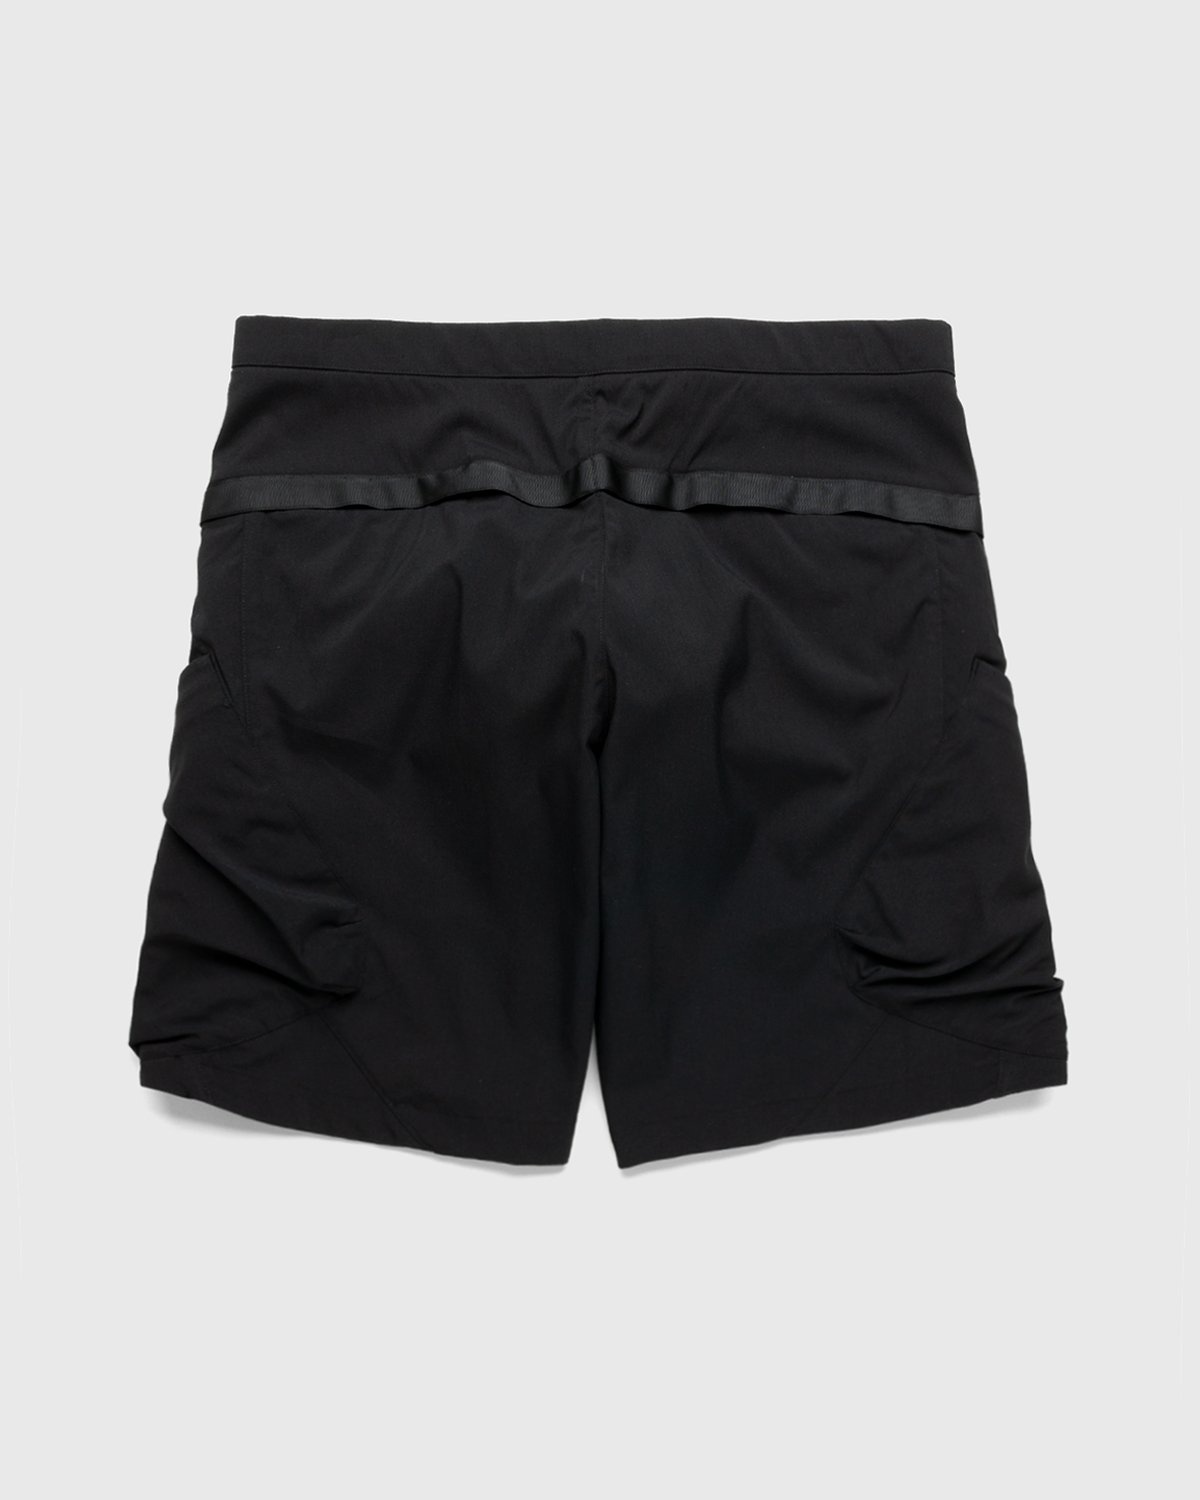 ACRONYM – SP29-M Cargo Shorts Black - Shorts - Black - Image 2